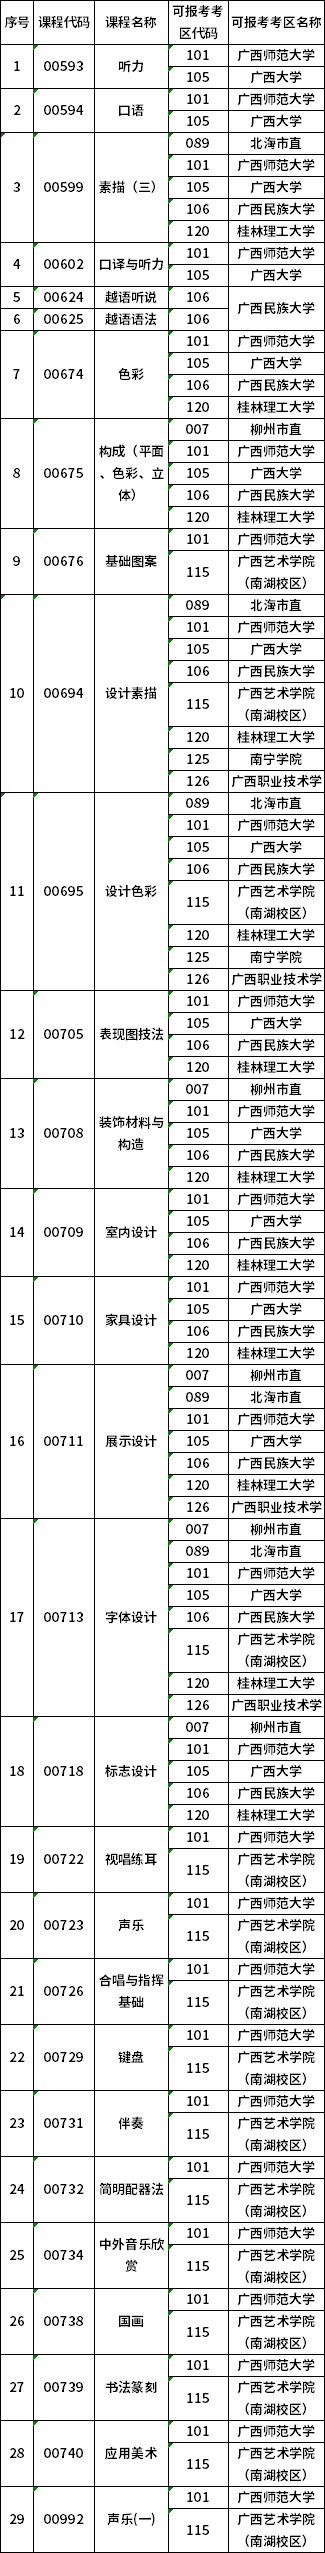 广西2020年上半年自考特殊课程考试地点安排表